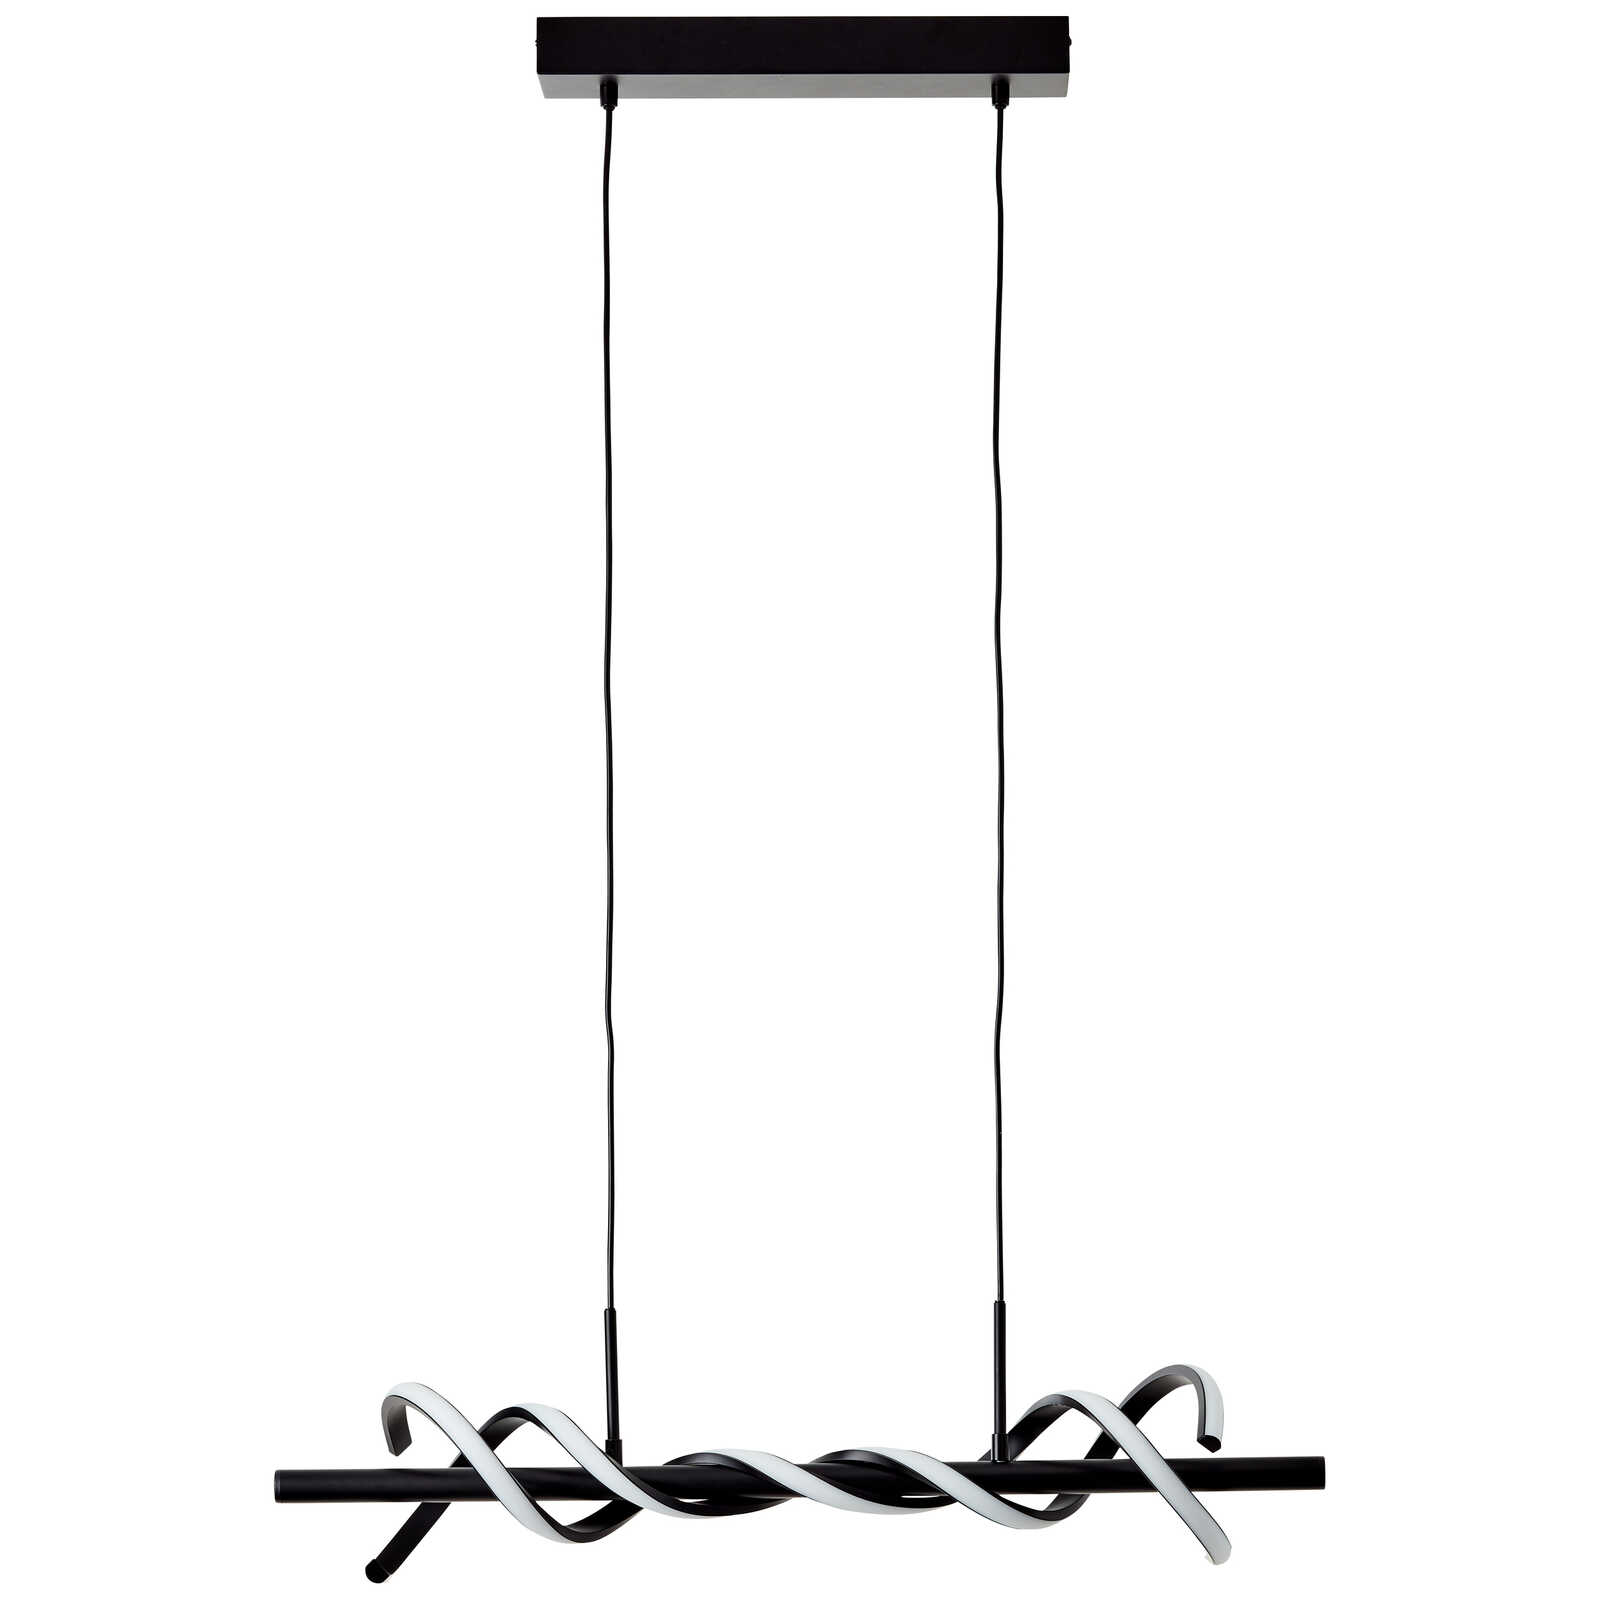             Kunststof hanglamp - Alexander 3 - Zwart
        